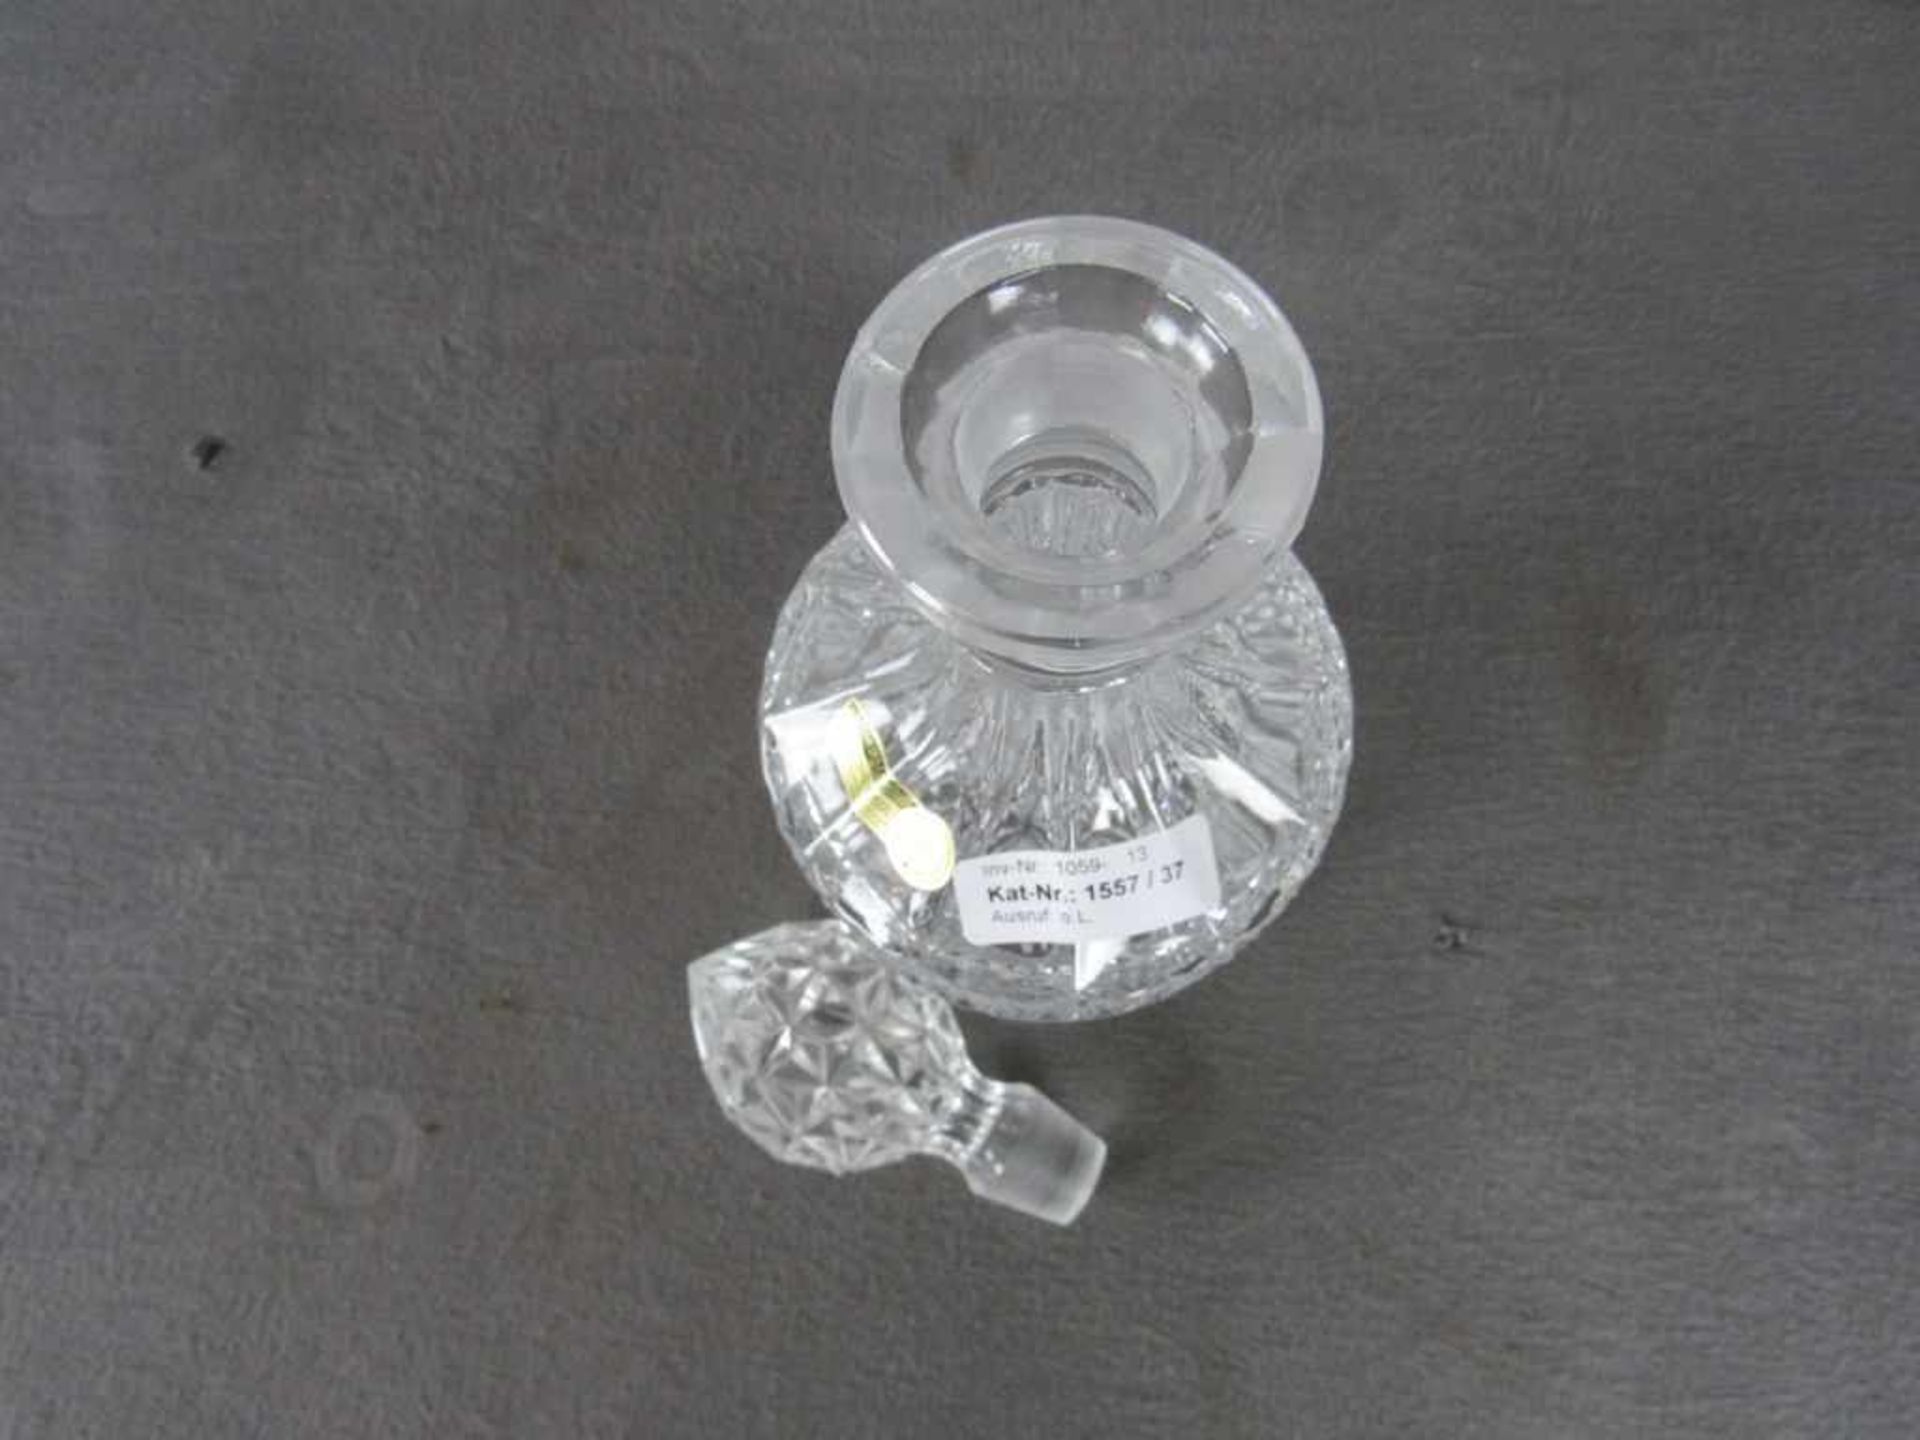 Kristallglaskaraffe 32cm hoch - Image 2 of 2